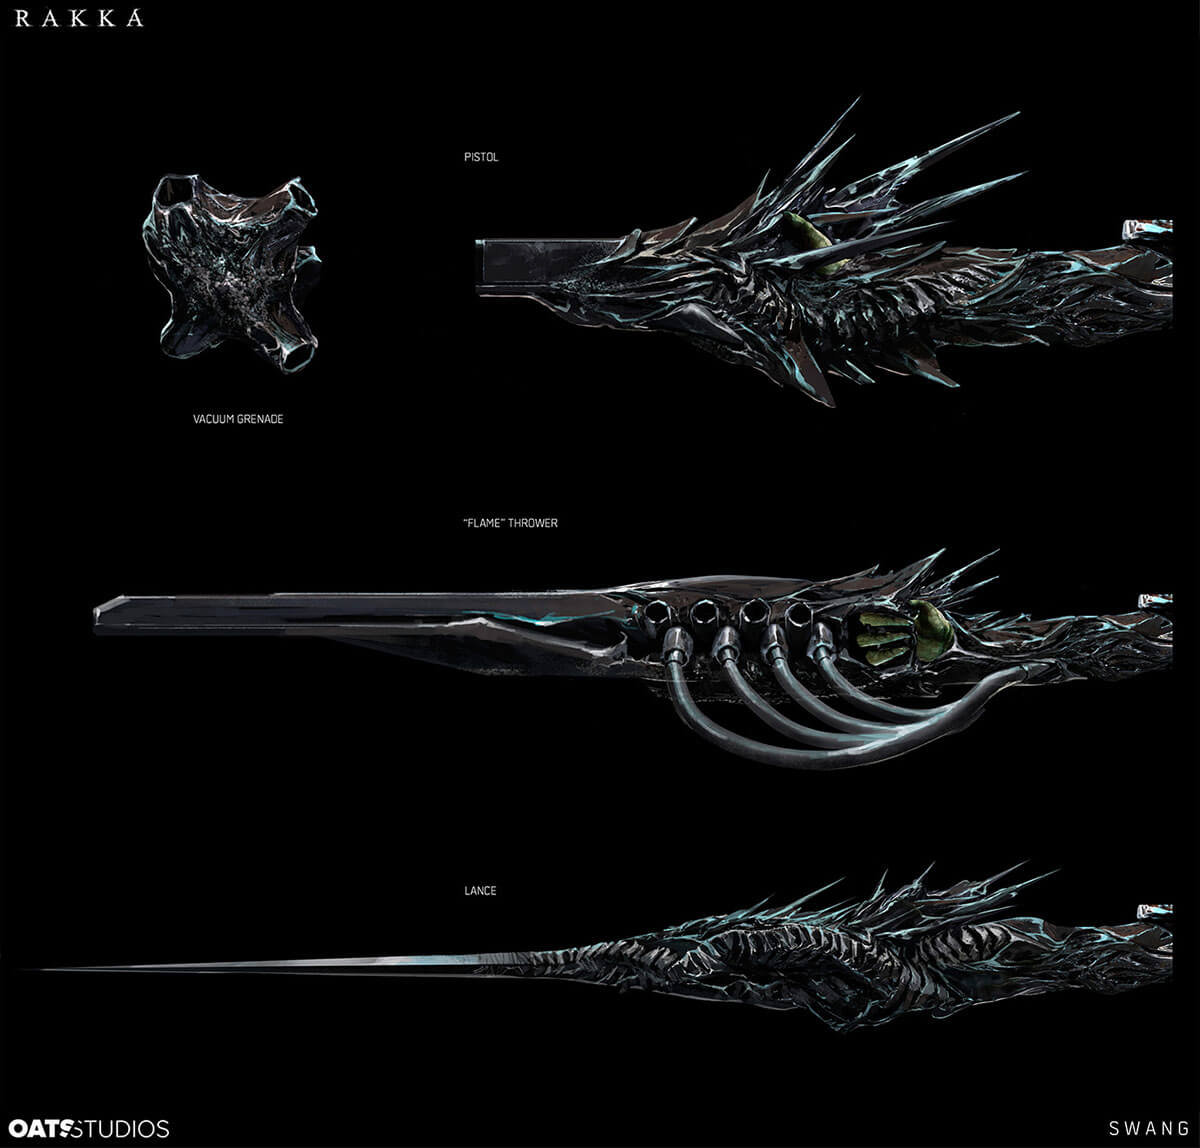 Rakka concept art of an alien weapon